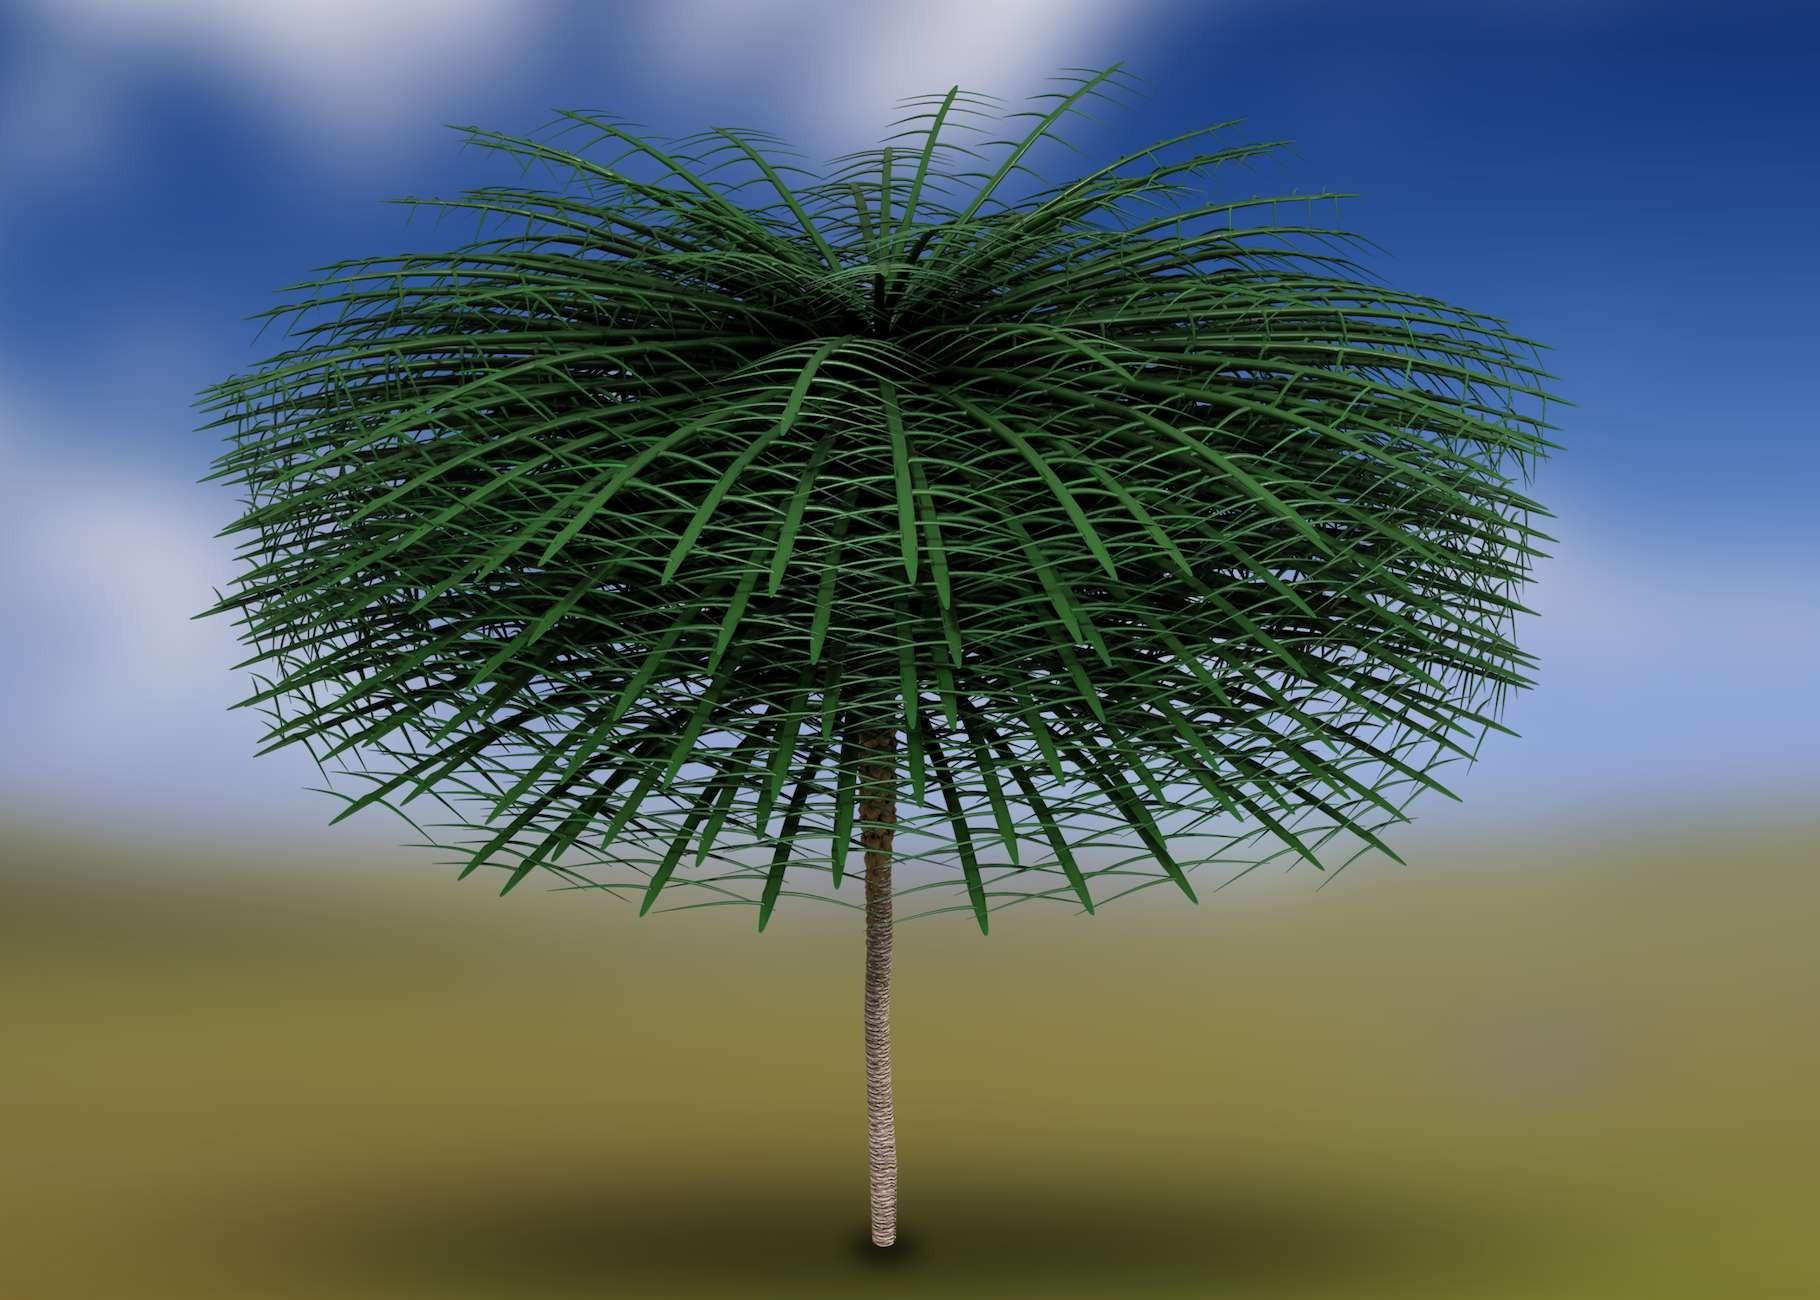 arbre forme inedite - Die Neuentdeckung eines in der Evolution einzigartigen Baumes mit beeindruckenden 1,75 m langen Blättern!